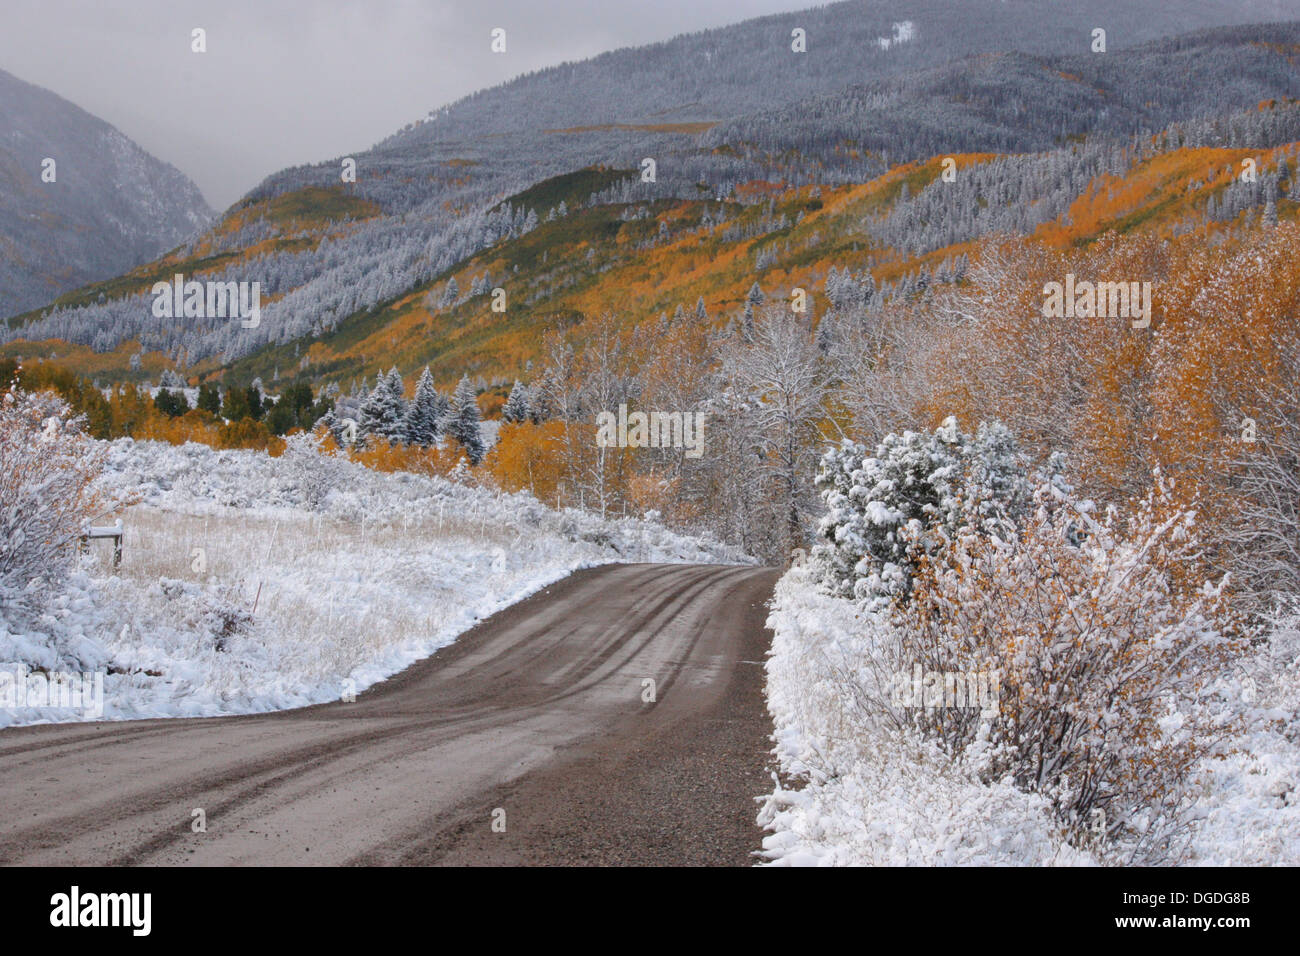 Eine schlammige Straße durchschneidet das Rocky Mountain Terrain Stockfoto